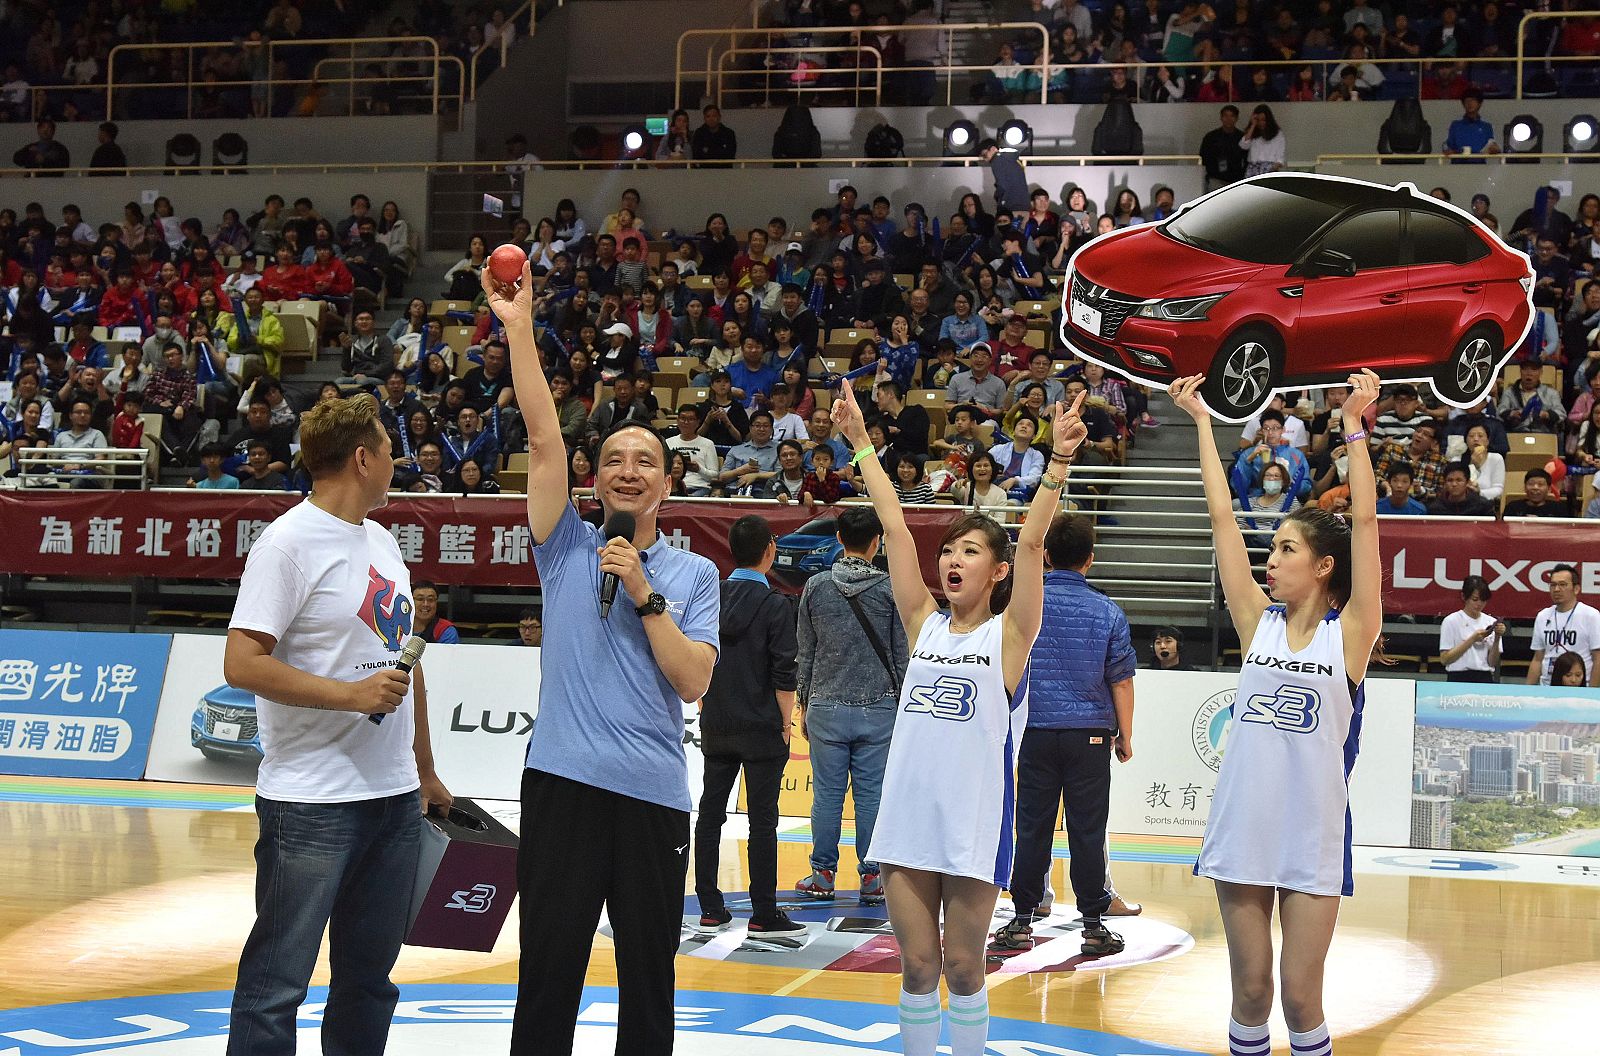 朱立倫市長為「新北裕隆納智捷籃球隊主題日」，抽出大獎─汽車一輛。